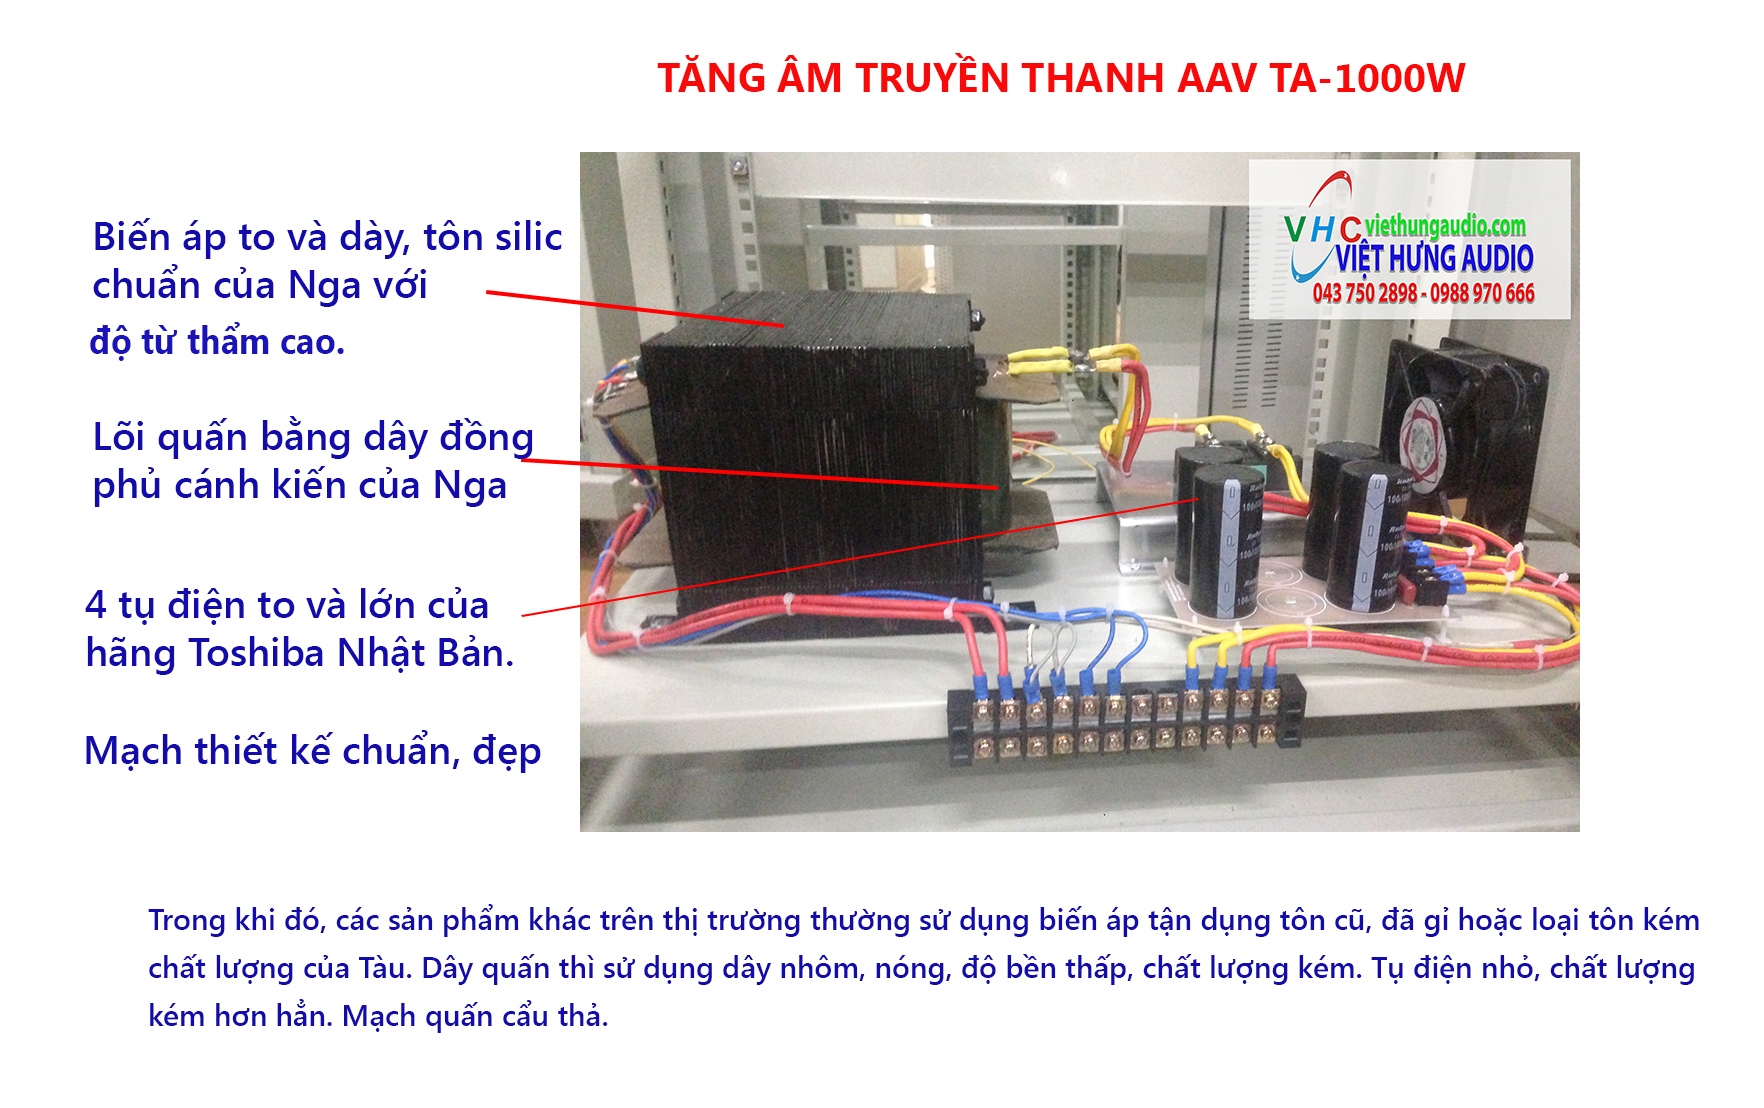 Tăng âm truyền thanh AAV Việt Hưng Audio chất lượng giá rẻ